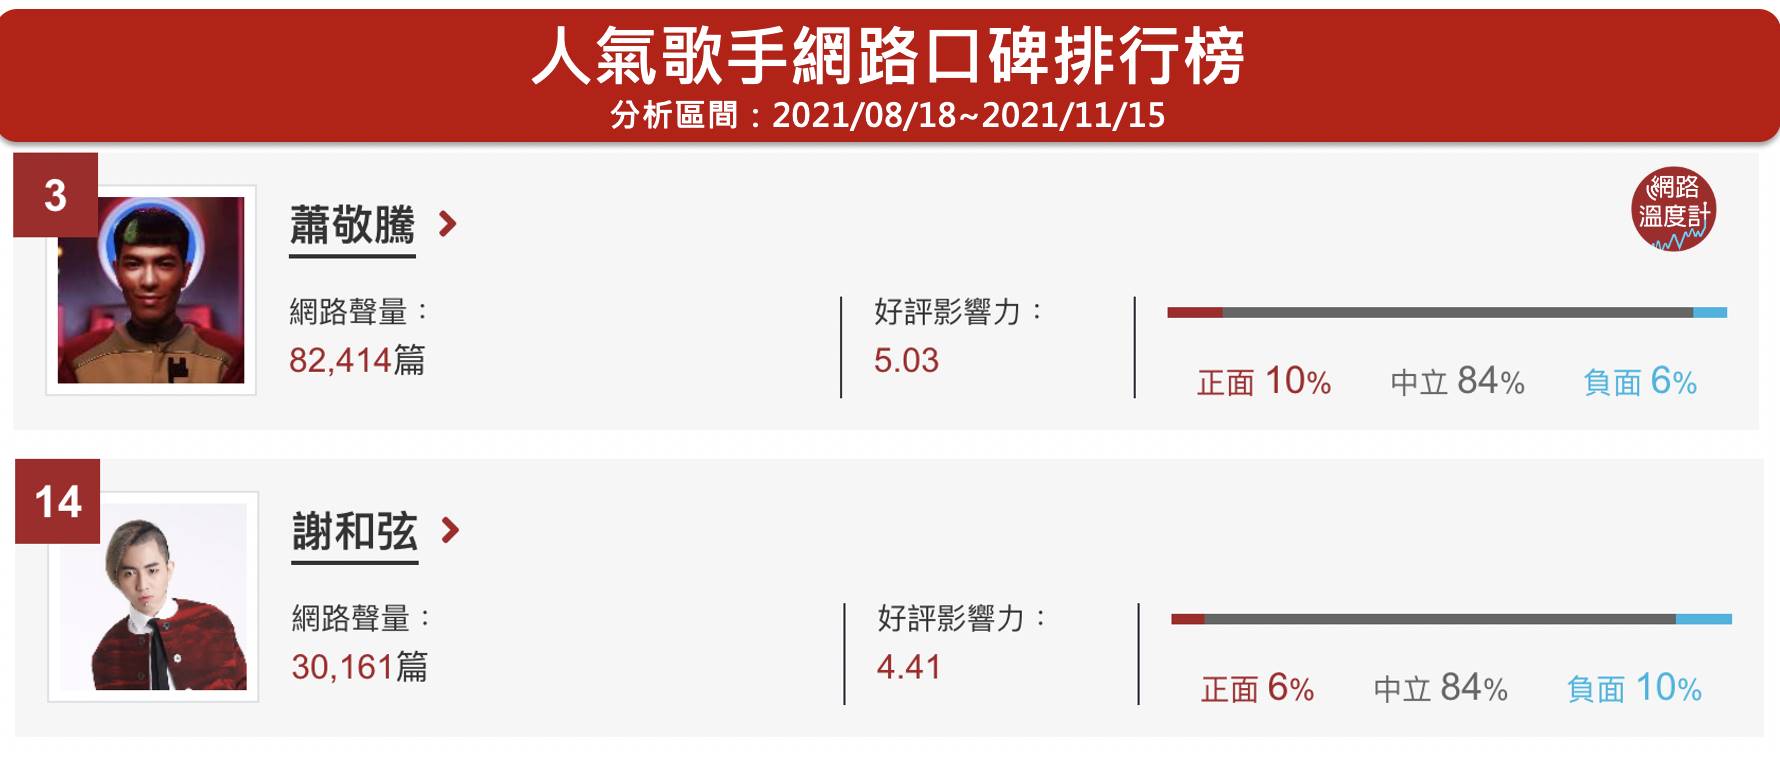 蕭敬騰、謝和弦位居網路溫度計的人氣歌手網路口碑第3、14名